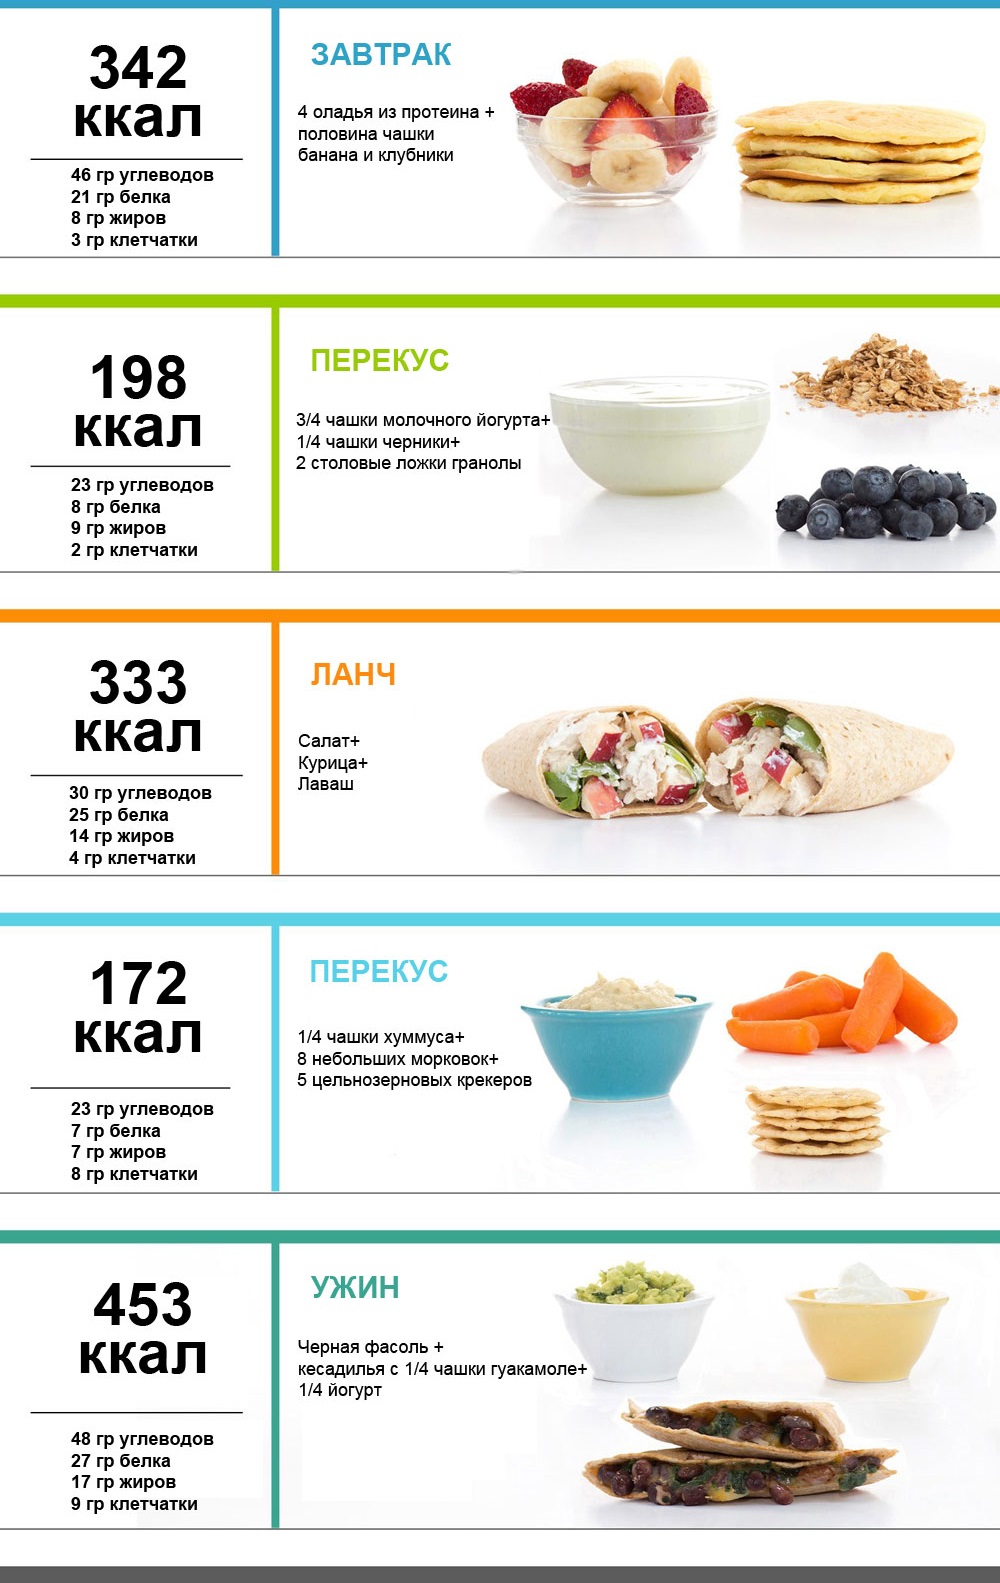 Thực đơn PP trong một tuần để giảm cân. Bảng với các công thức nấu ăn từ các sản phẩm đơn giản, chế độ ăn gần đúng cho 1000, 1200, 1500 calo mỗi ngày